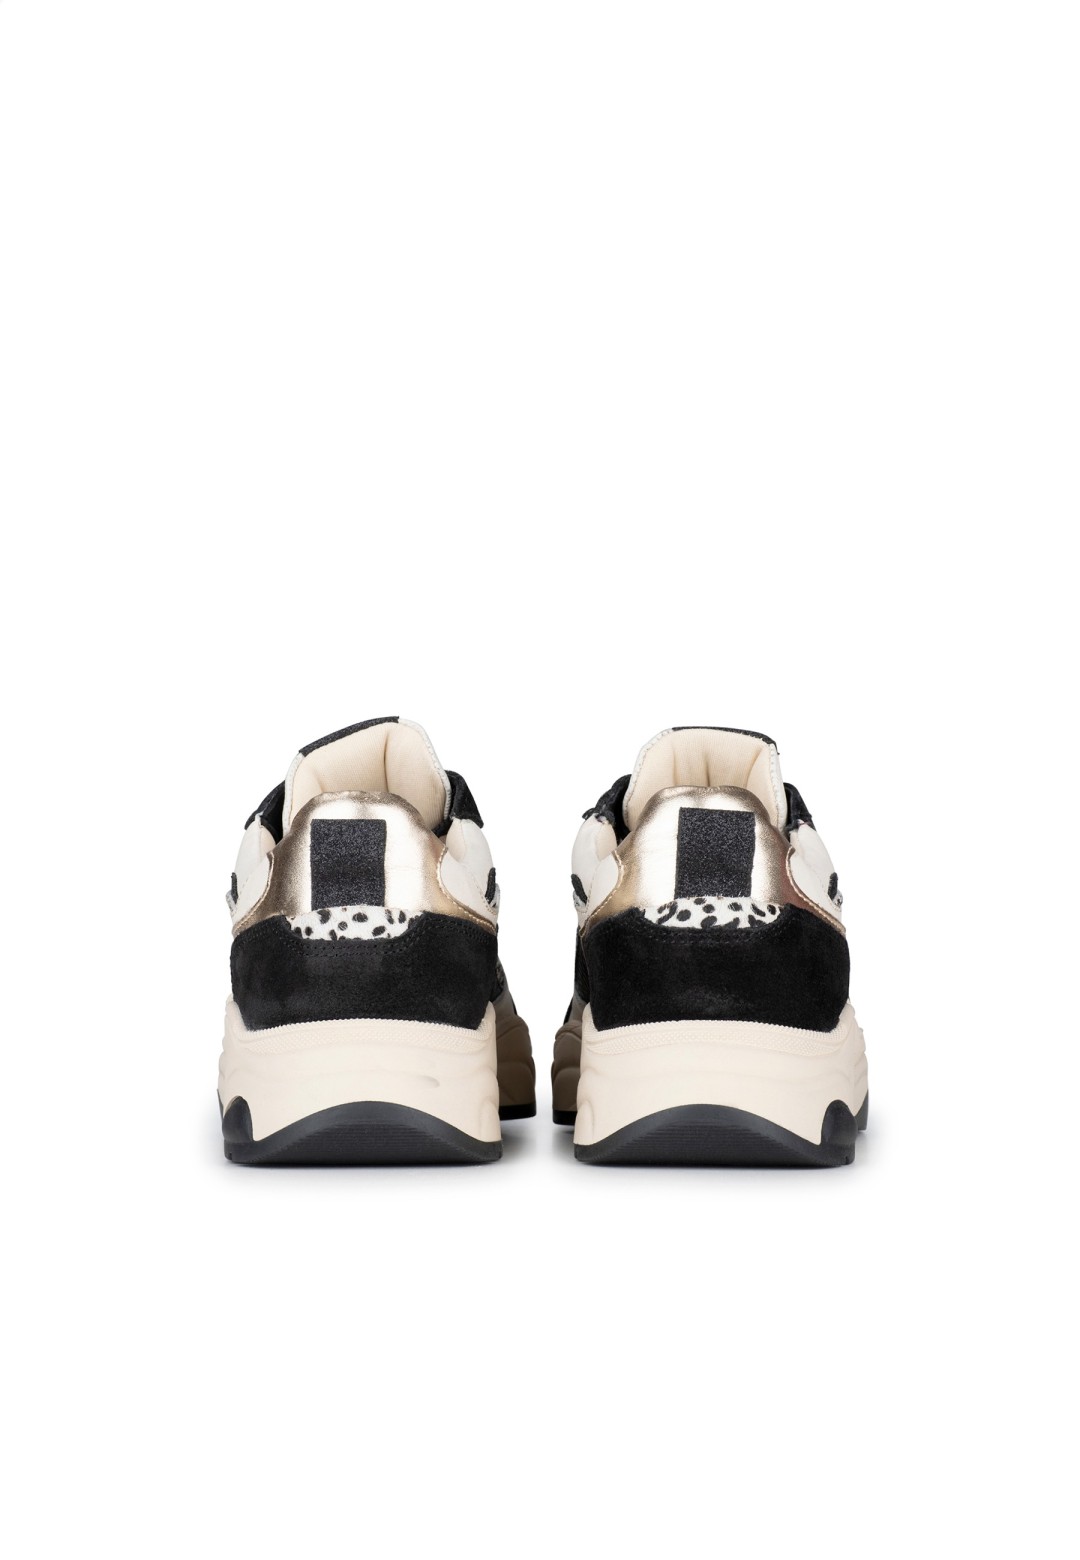 PS Poelman Dames Iva Sneaker | De Officiële POELMAN Webshop